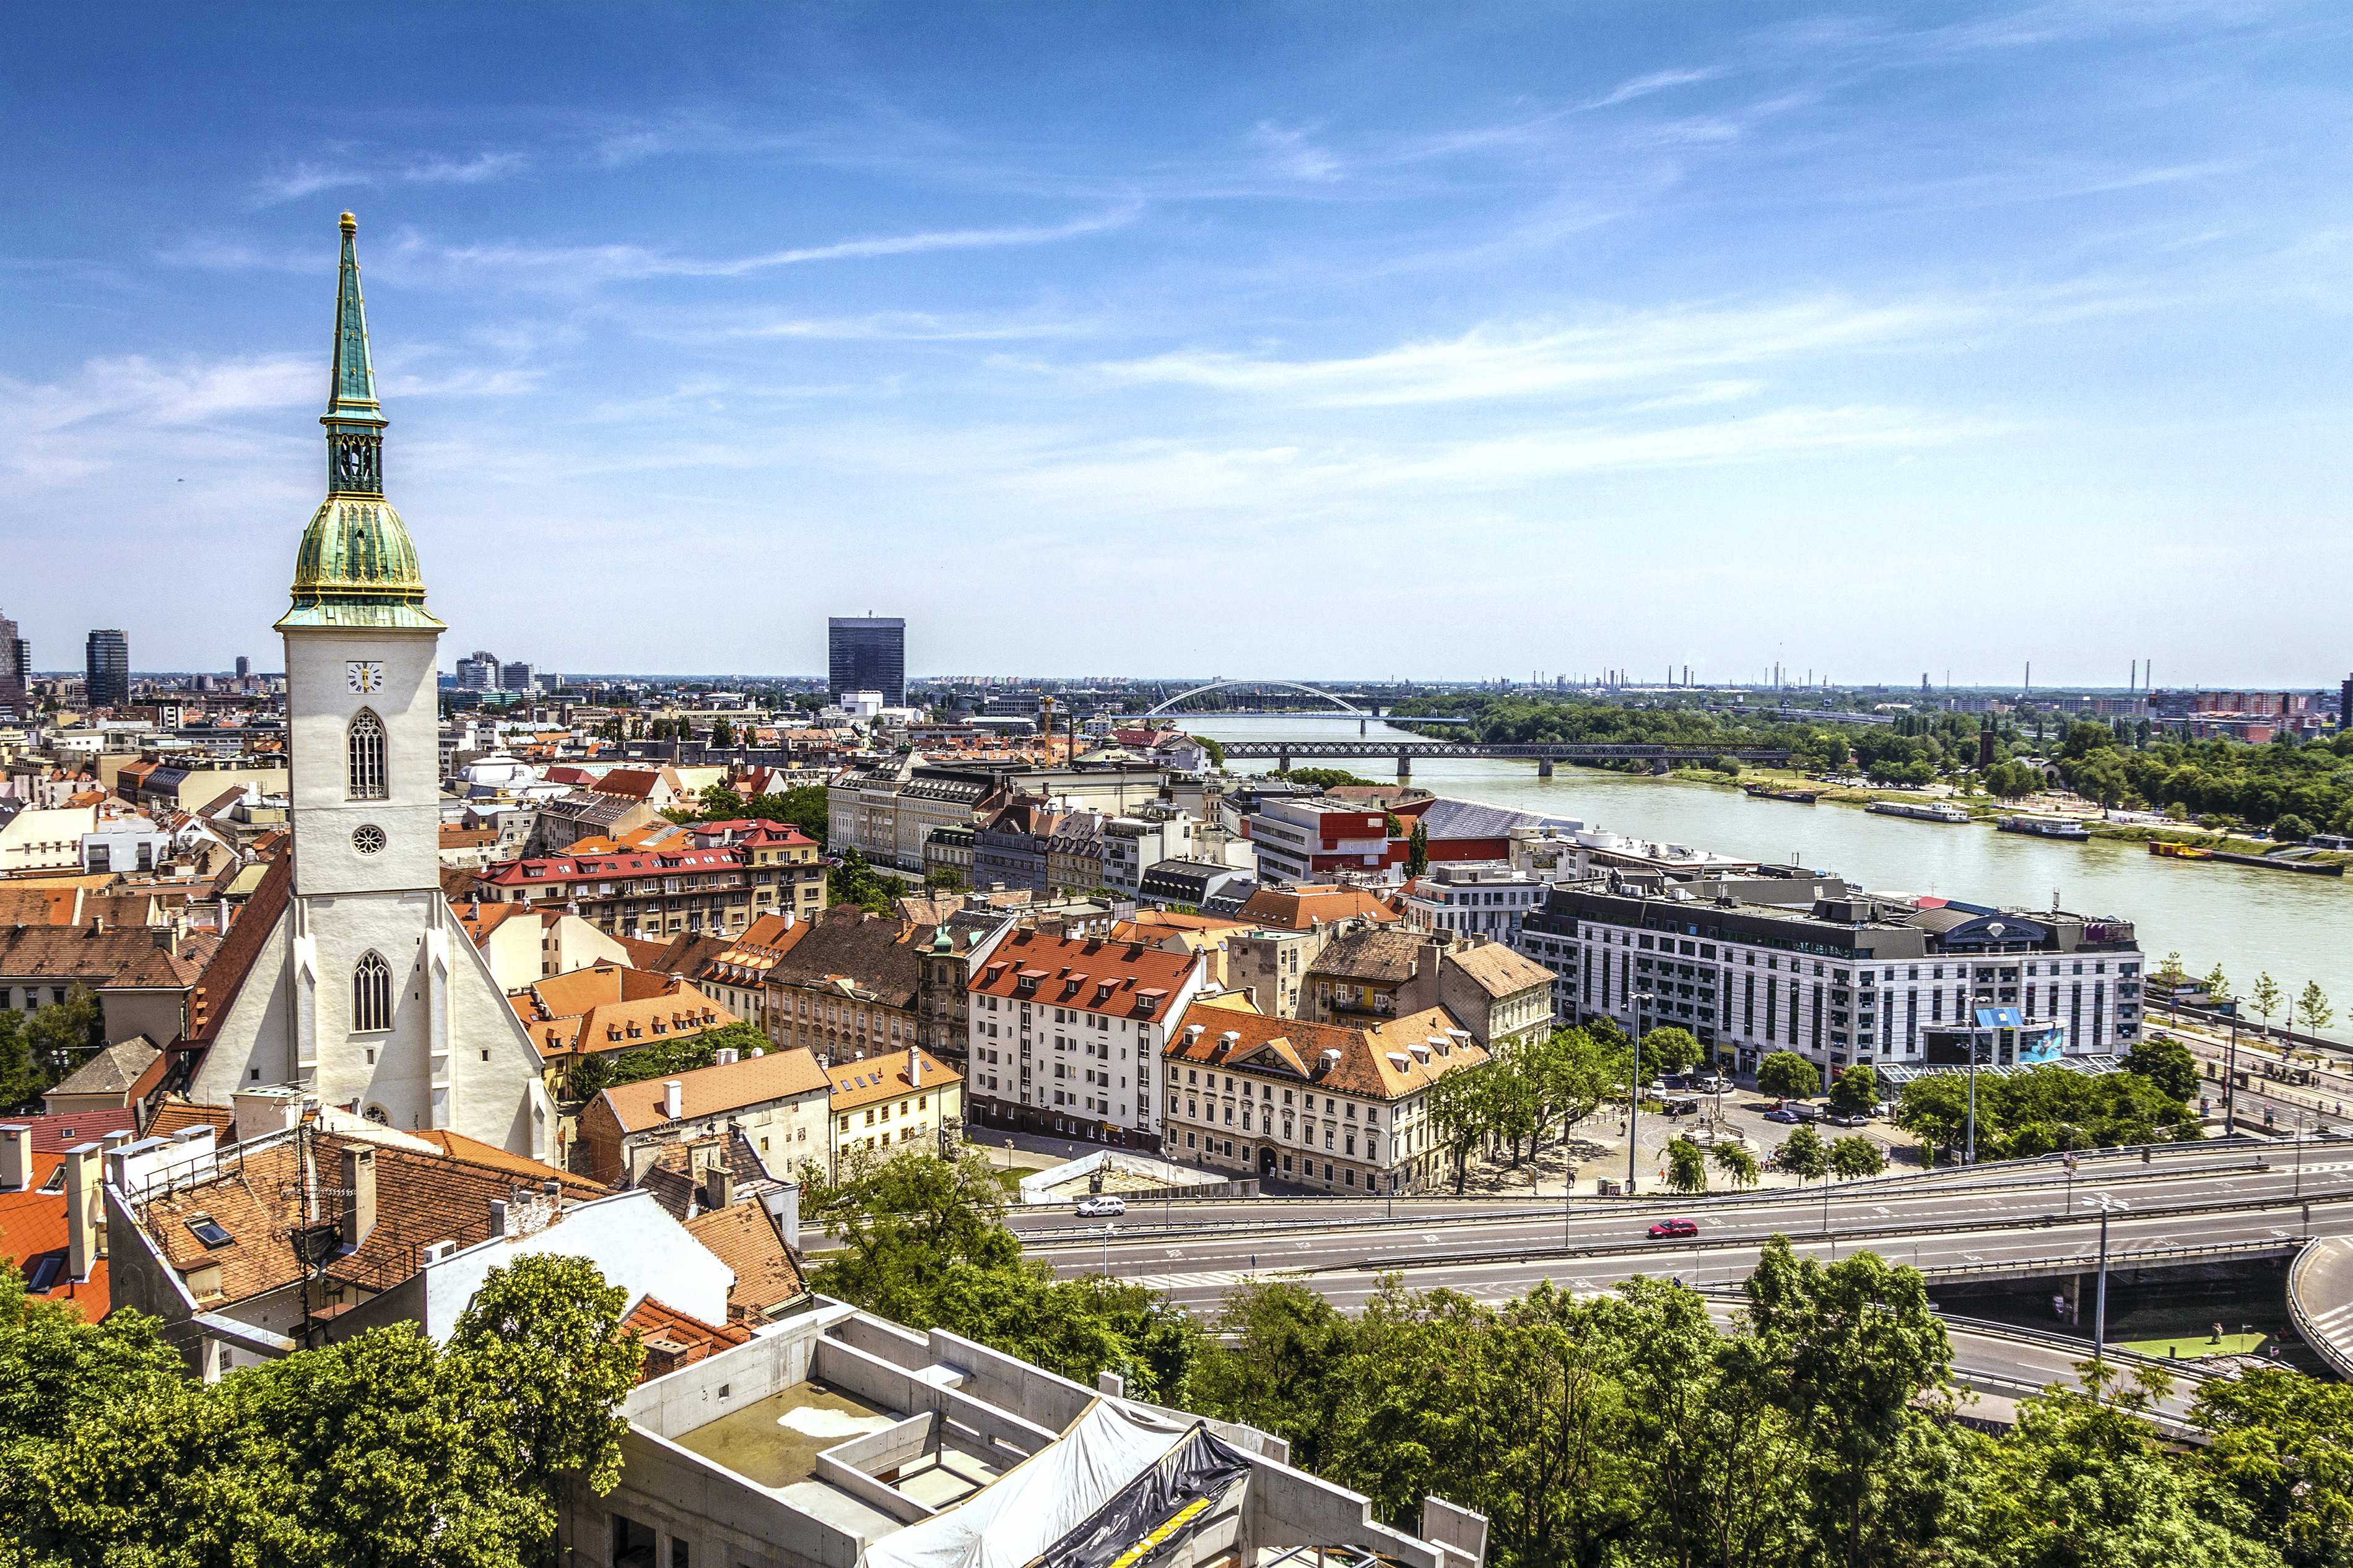 Bratislava, Hauptstadt der Slowakei